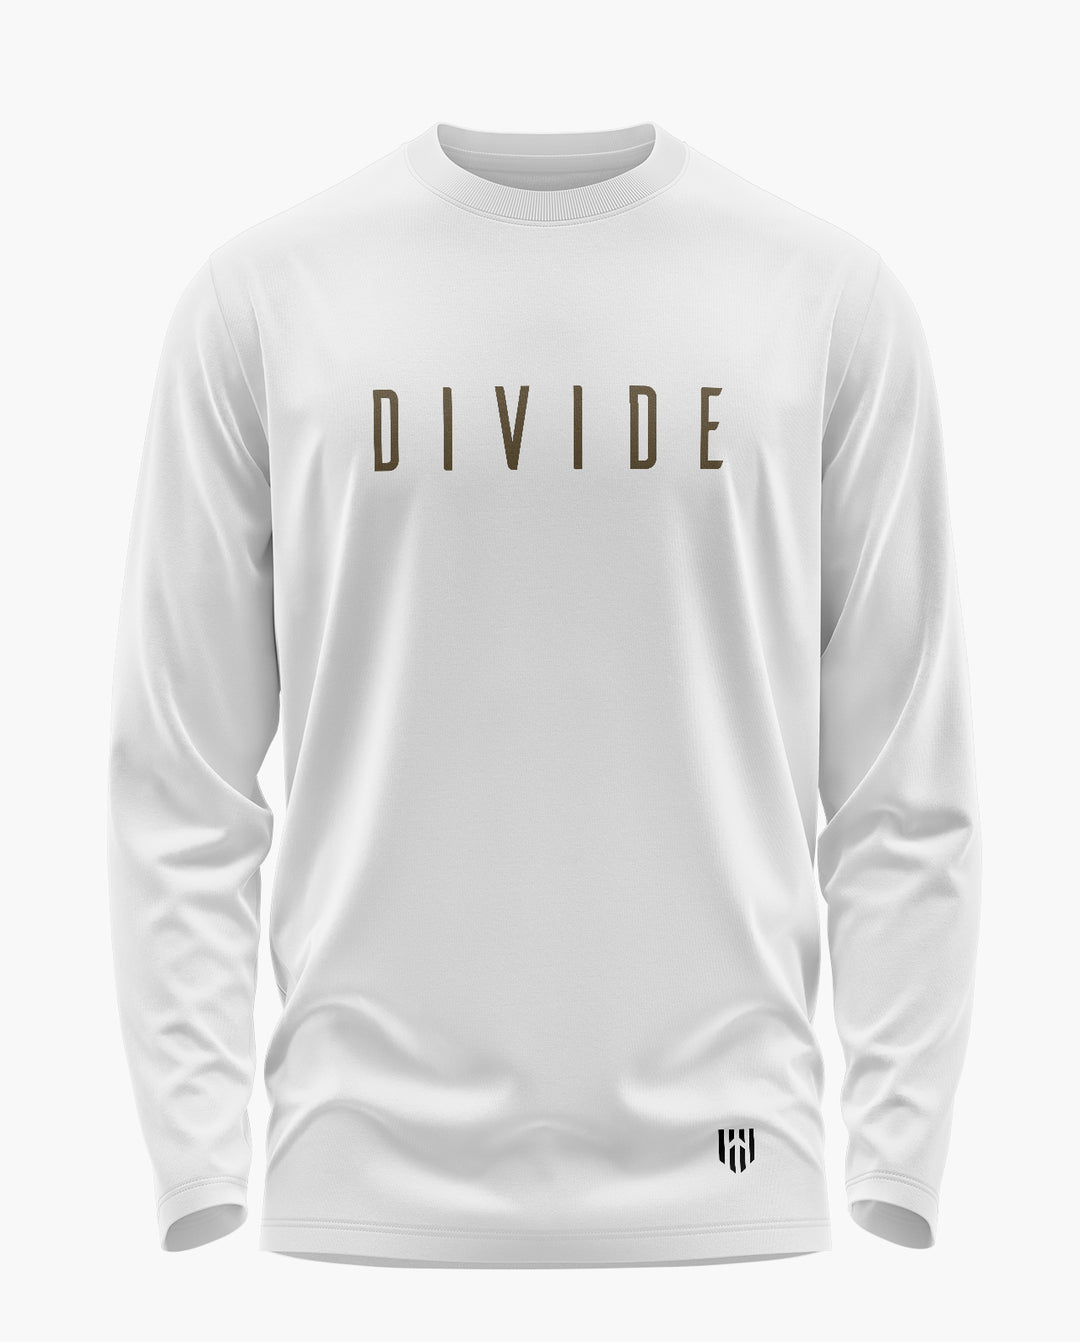 DIVIDE Full Sleeve T-Shirt